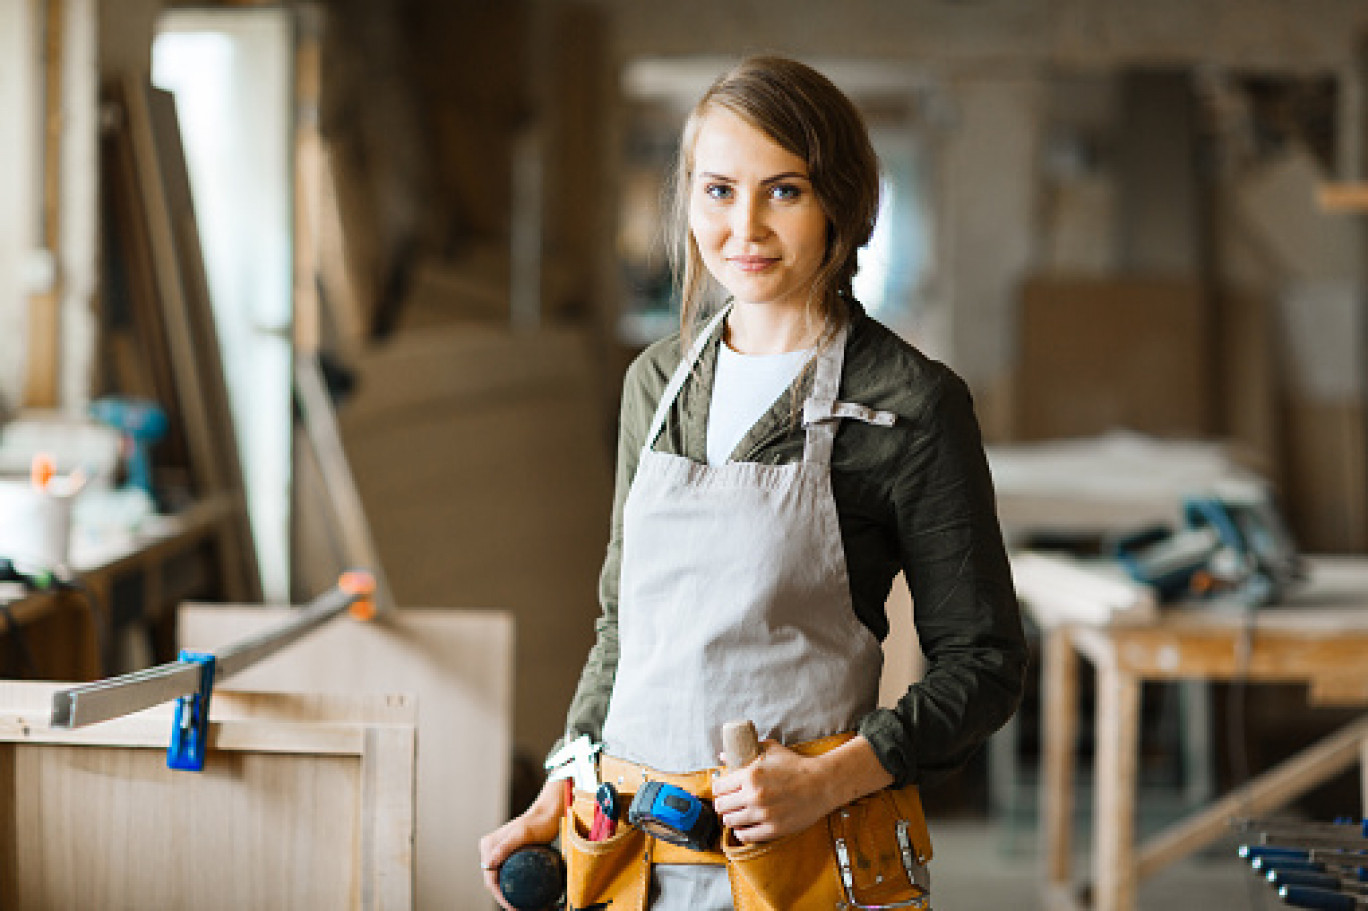 Le nombre de femmes cheffes d'entreprise individuelle artisanale augmente régulièrement ces dernières années.